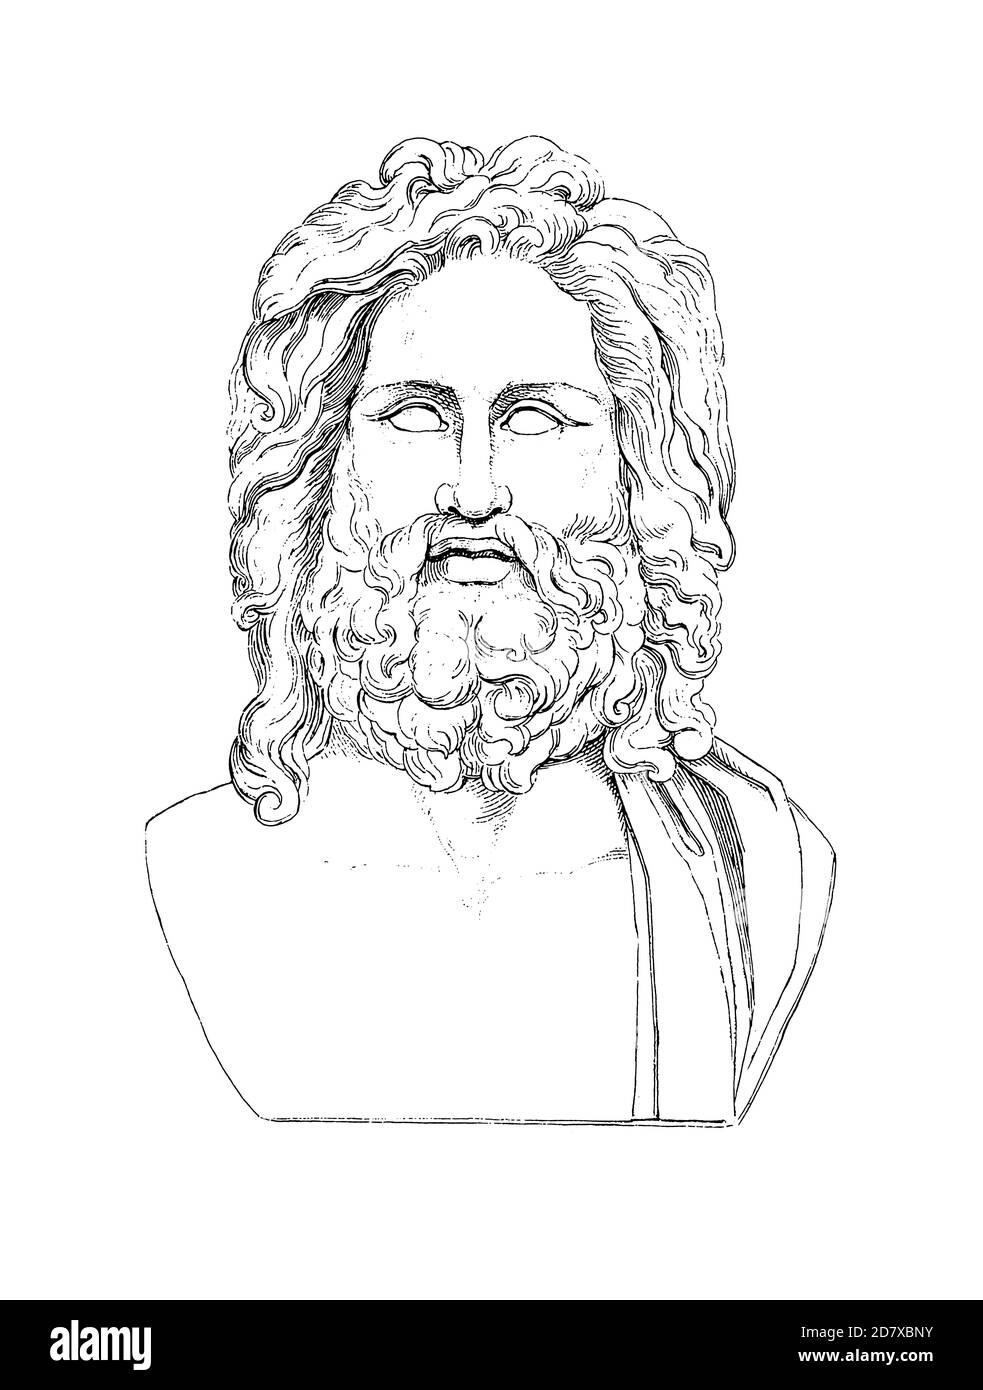 Gravure du XIXe siècle d'Otricoli Zeus, buste de Zeus actuellement au Musée du Vatican. Illustration publiée dans Systematischer Bilder Atlas - Bauwese Banque D'Images